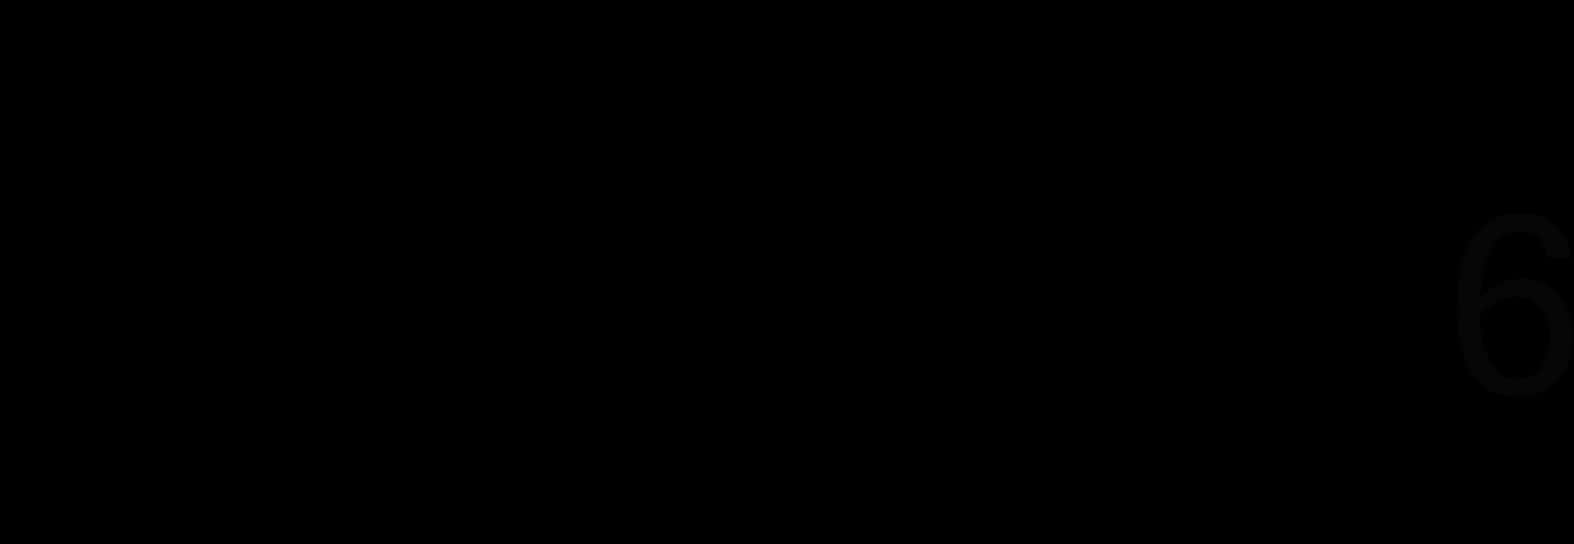 Samsung Logo Black Background PNG